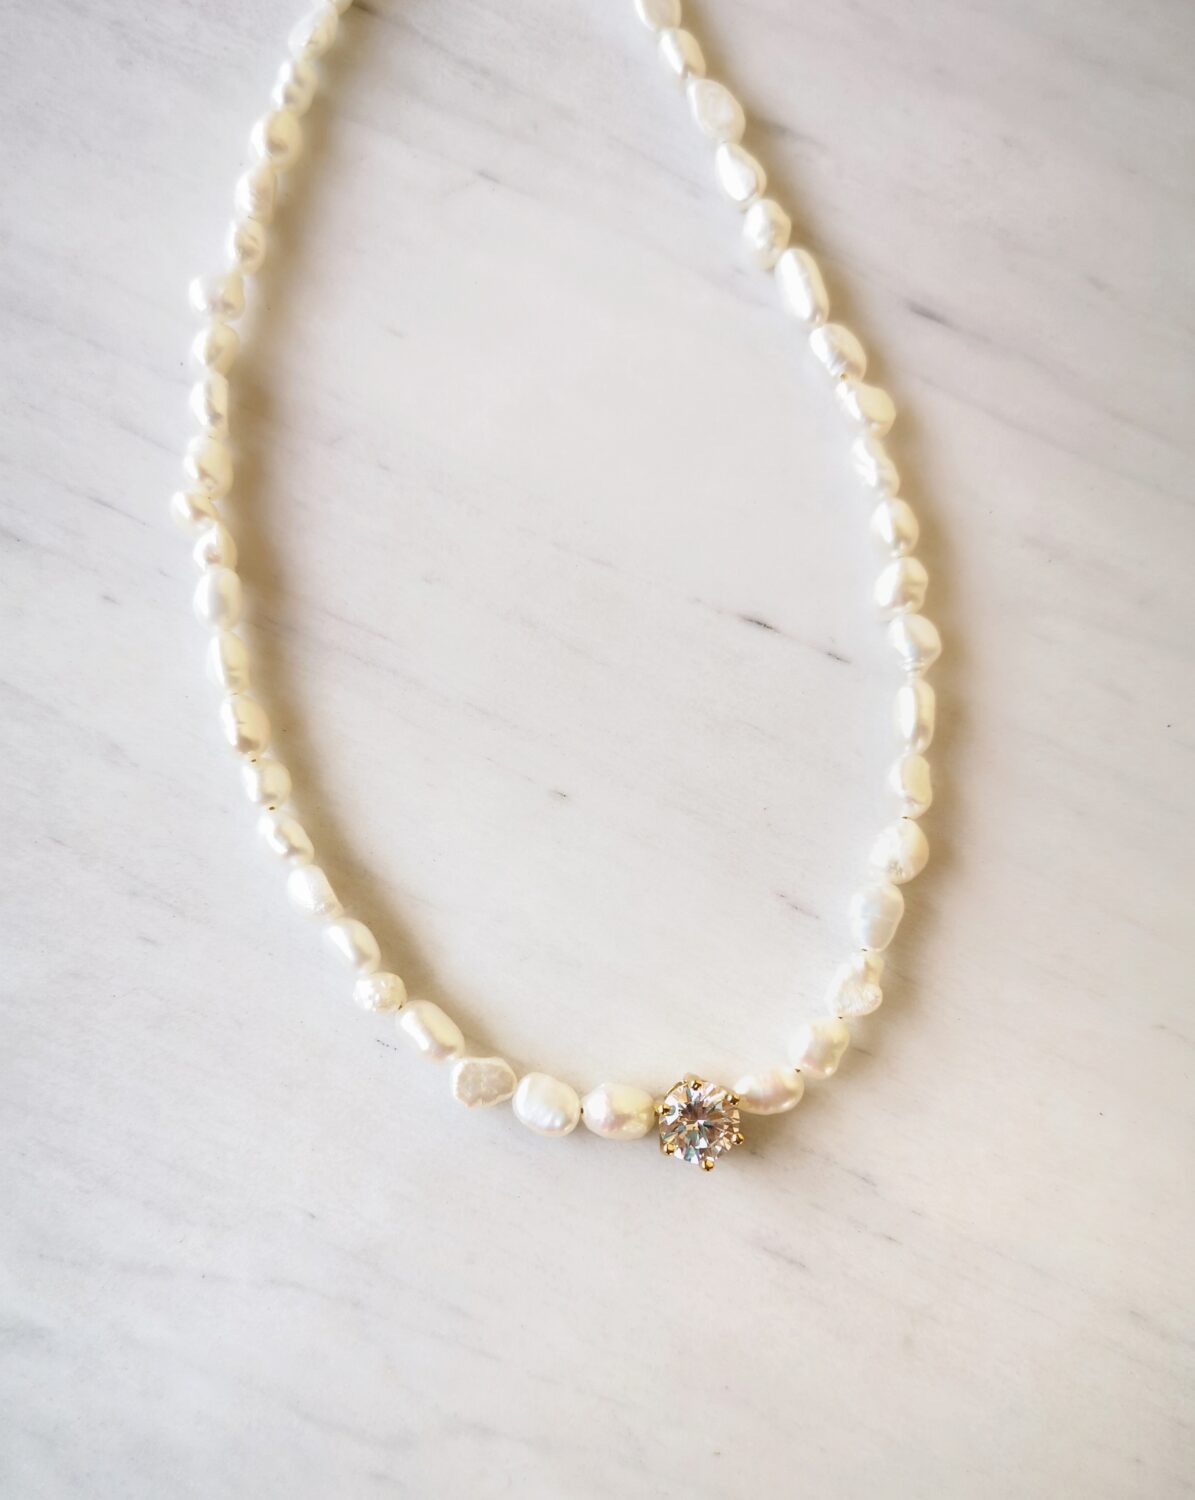 Pearl zircon necklace